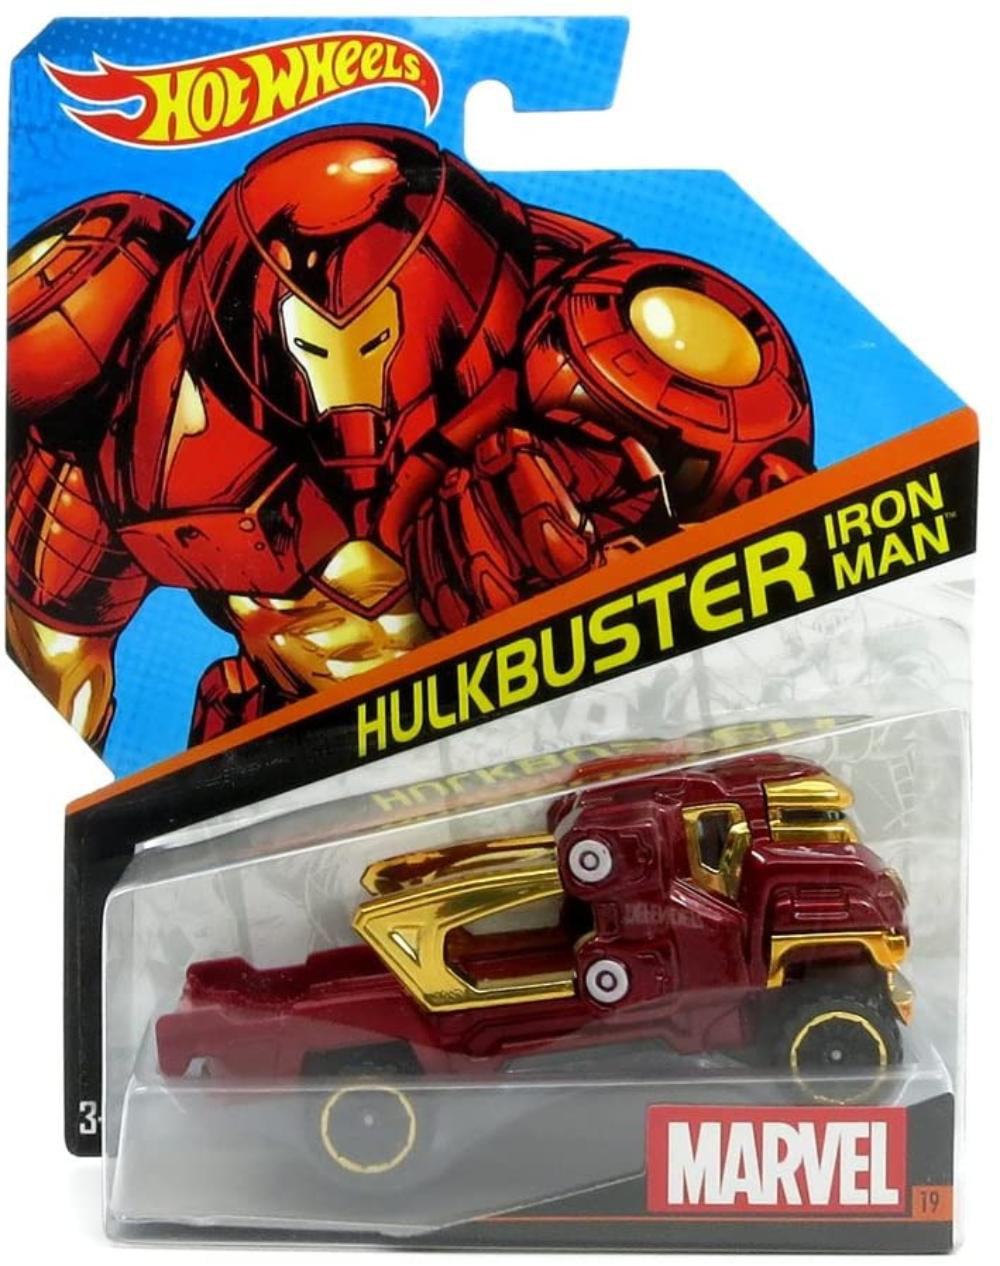 Hot Wheels, Marvel Character Car, Hulkbuster Iron Man 19